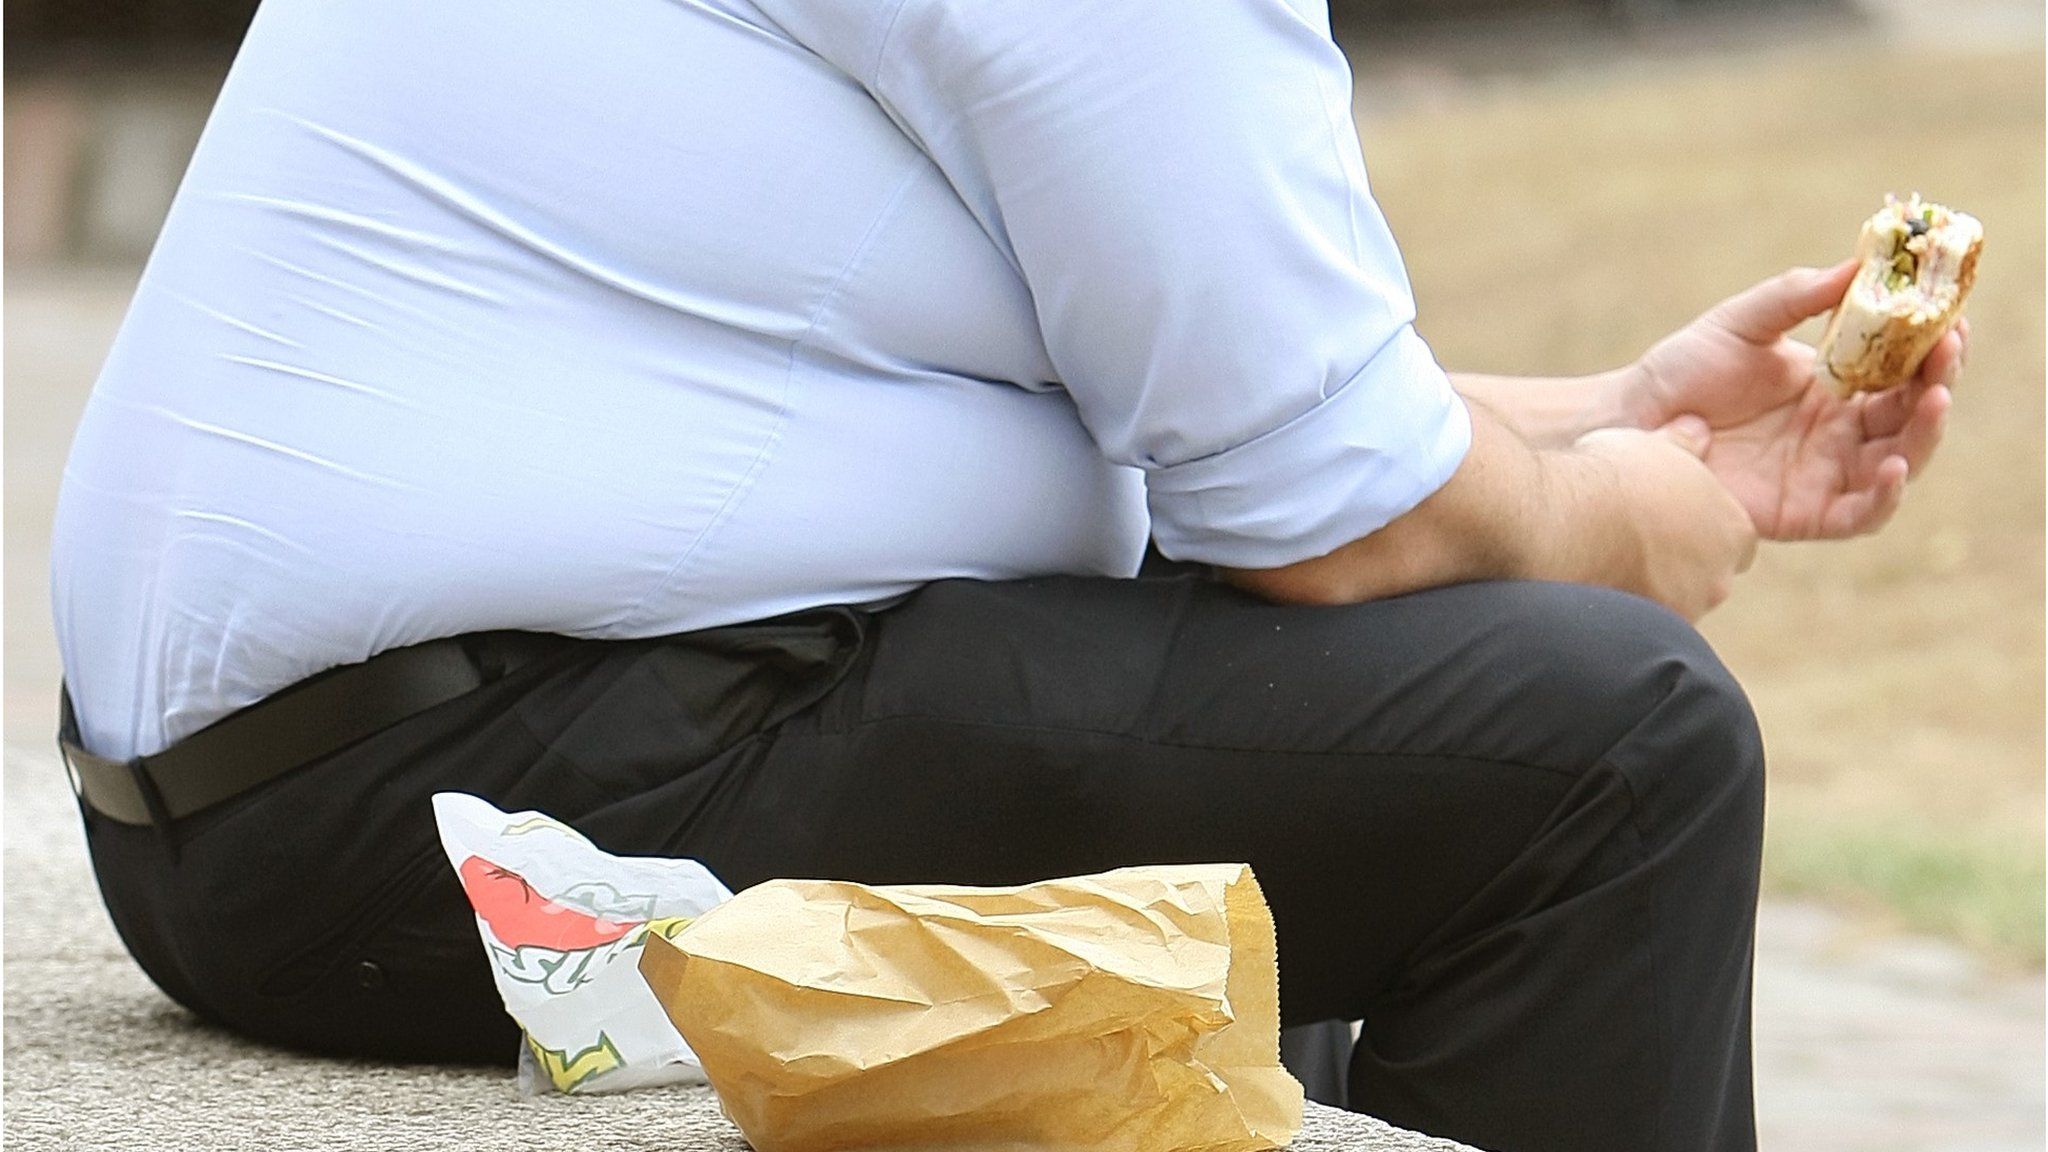 An overweight man eating